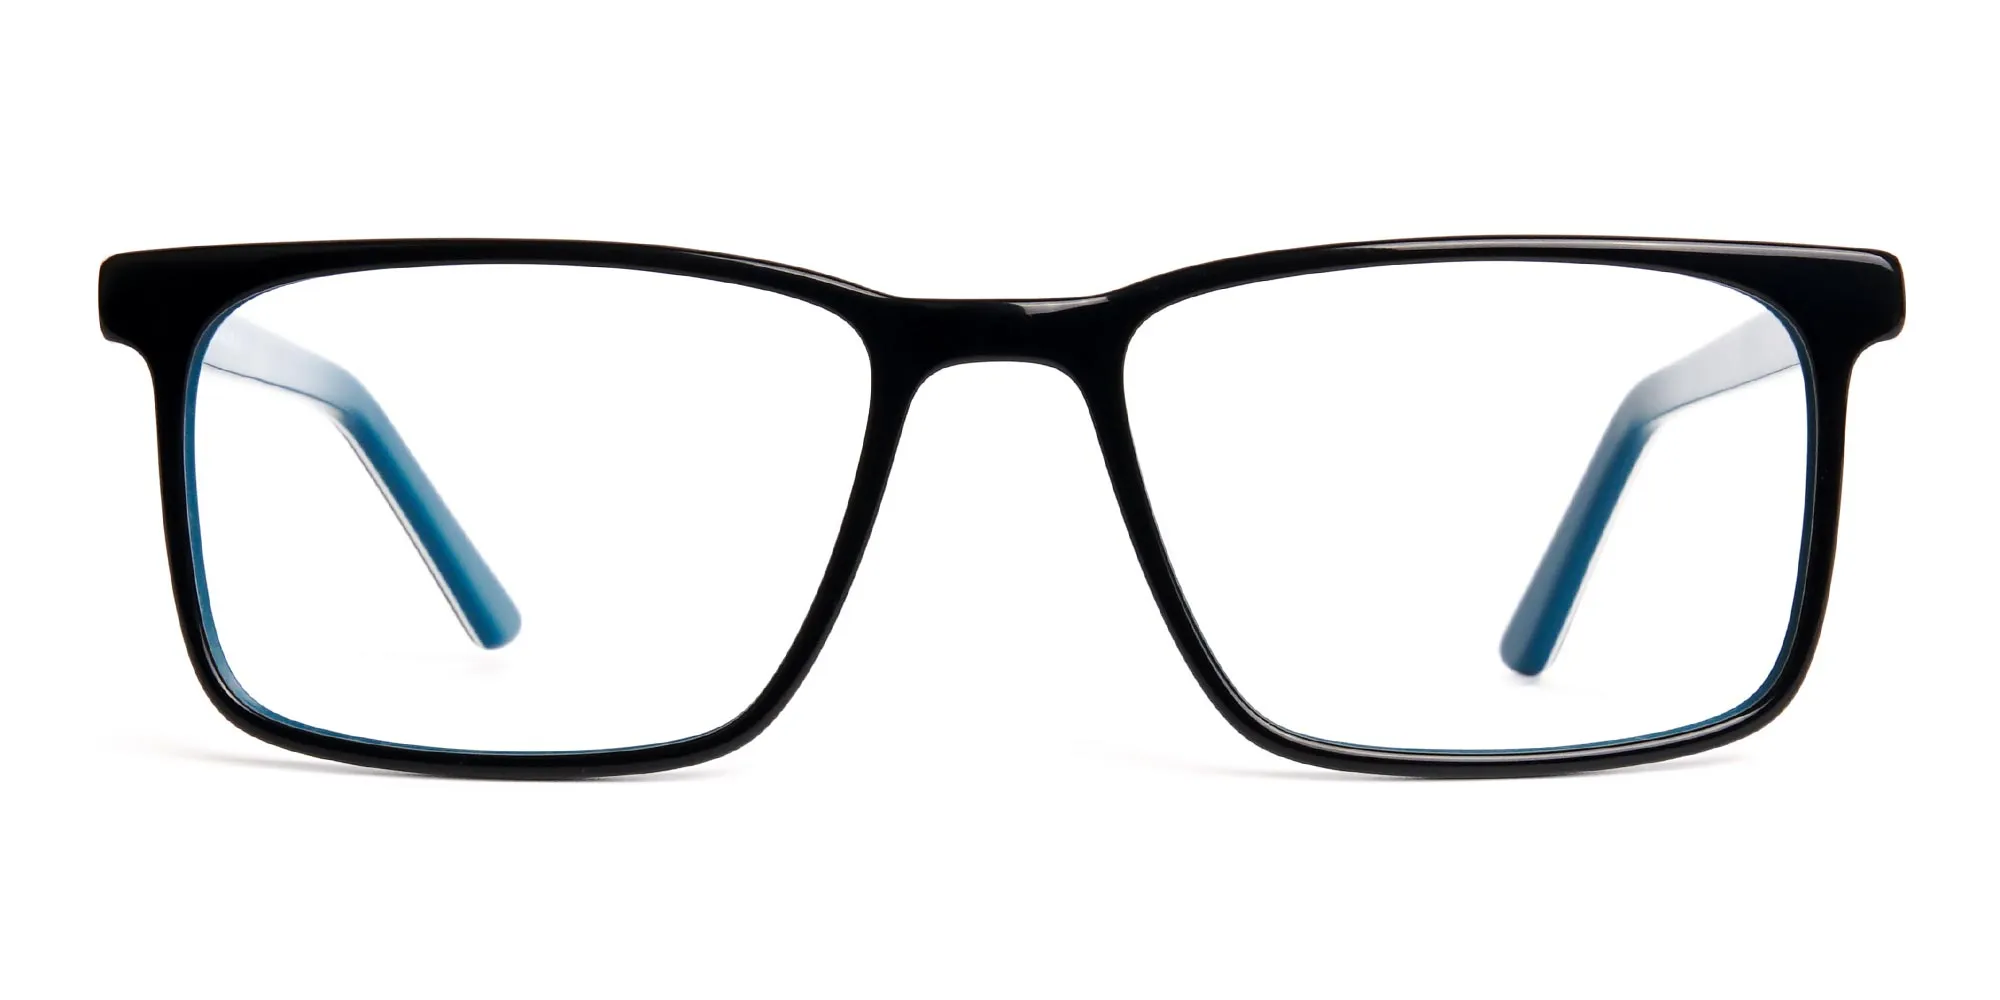 designer Black and teal rectangular glasses frames